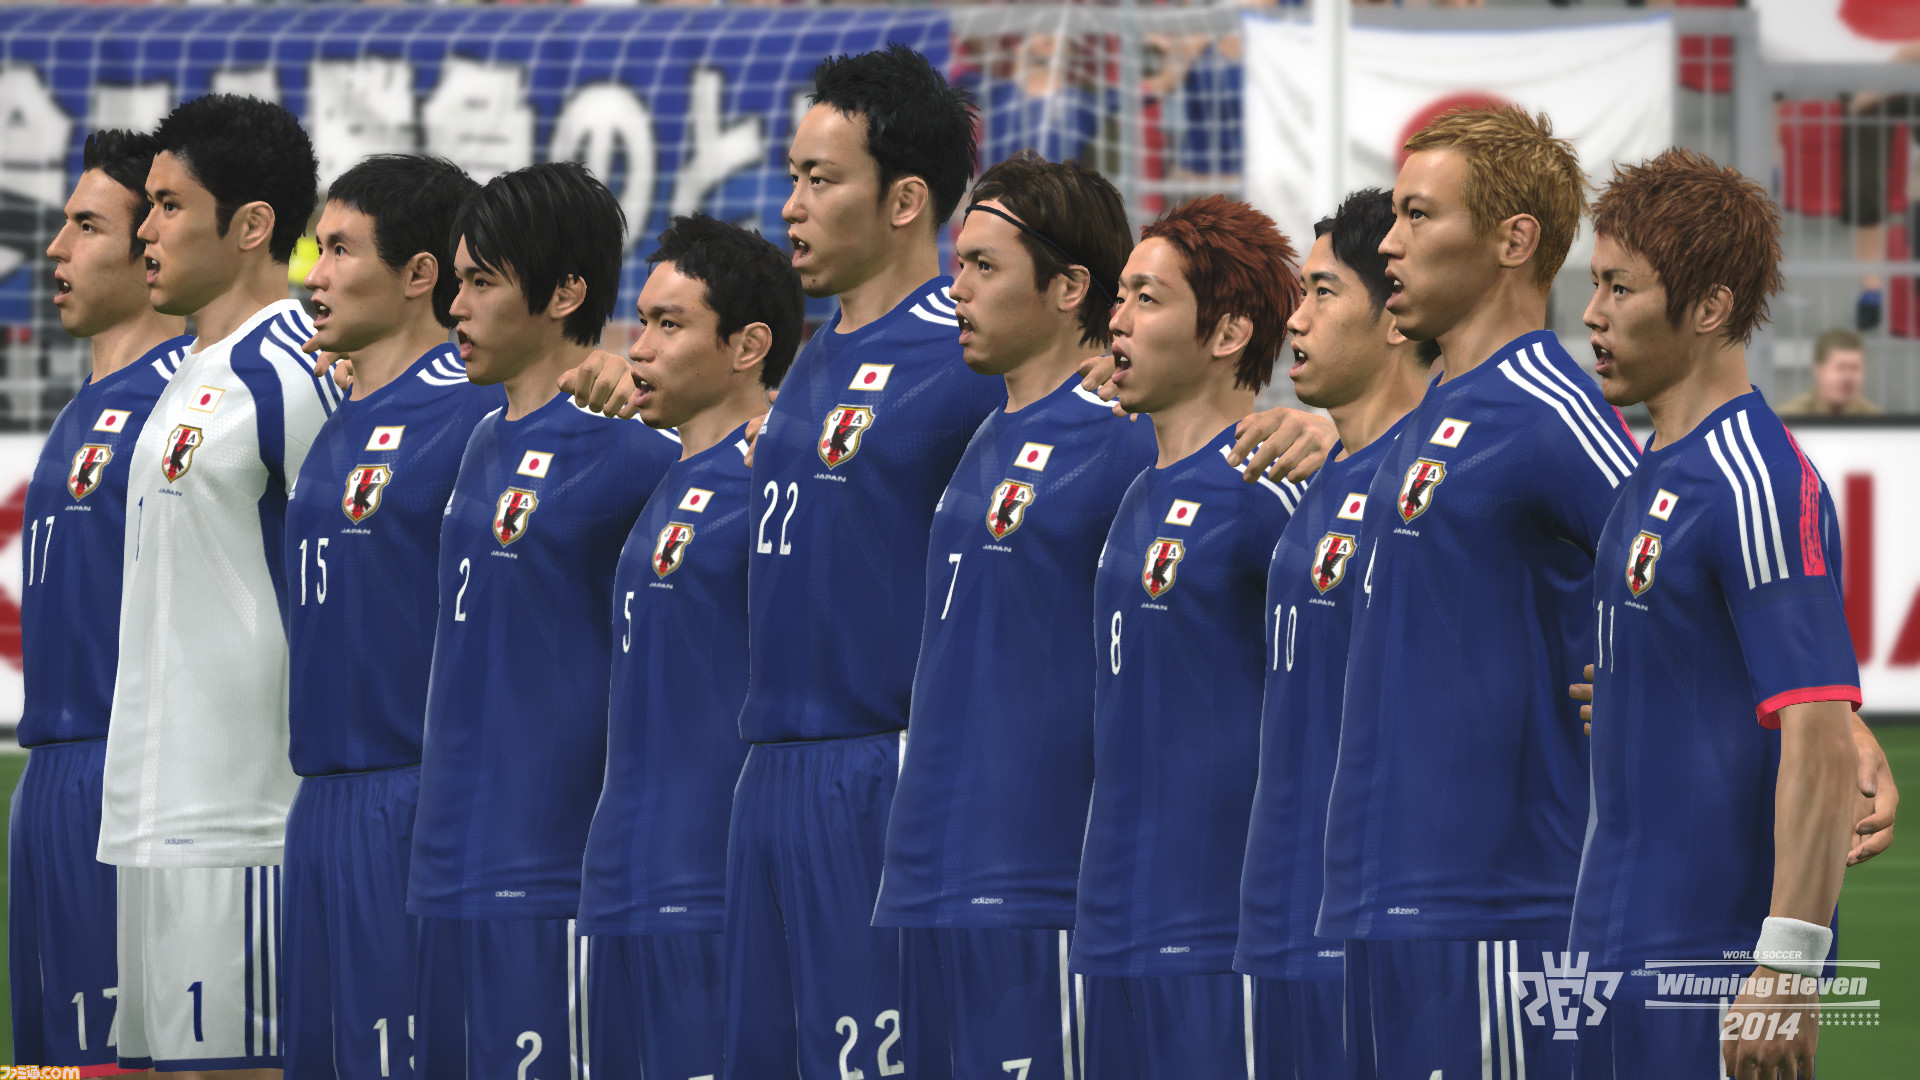 ワールドサッカー ウイニングイレブン 14 で発表されたばかりの日本代表の新ユニフォームが 無料アップデートで使用可能に ファミ通 Com